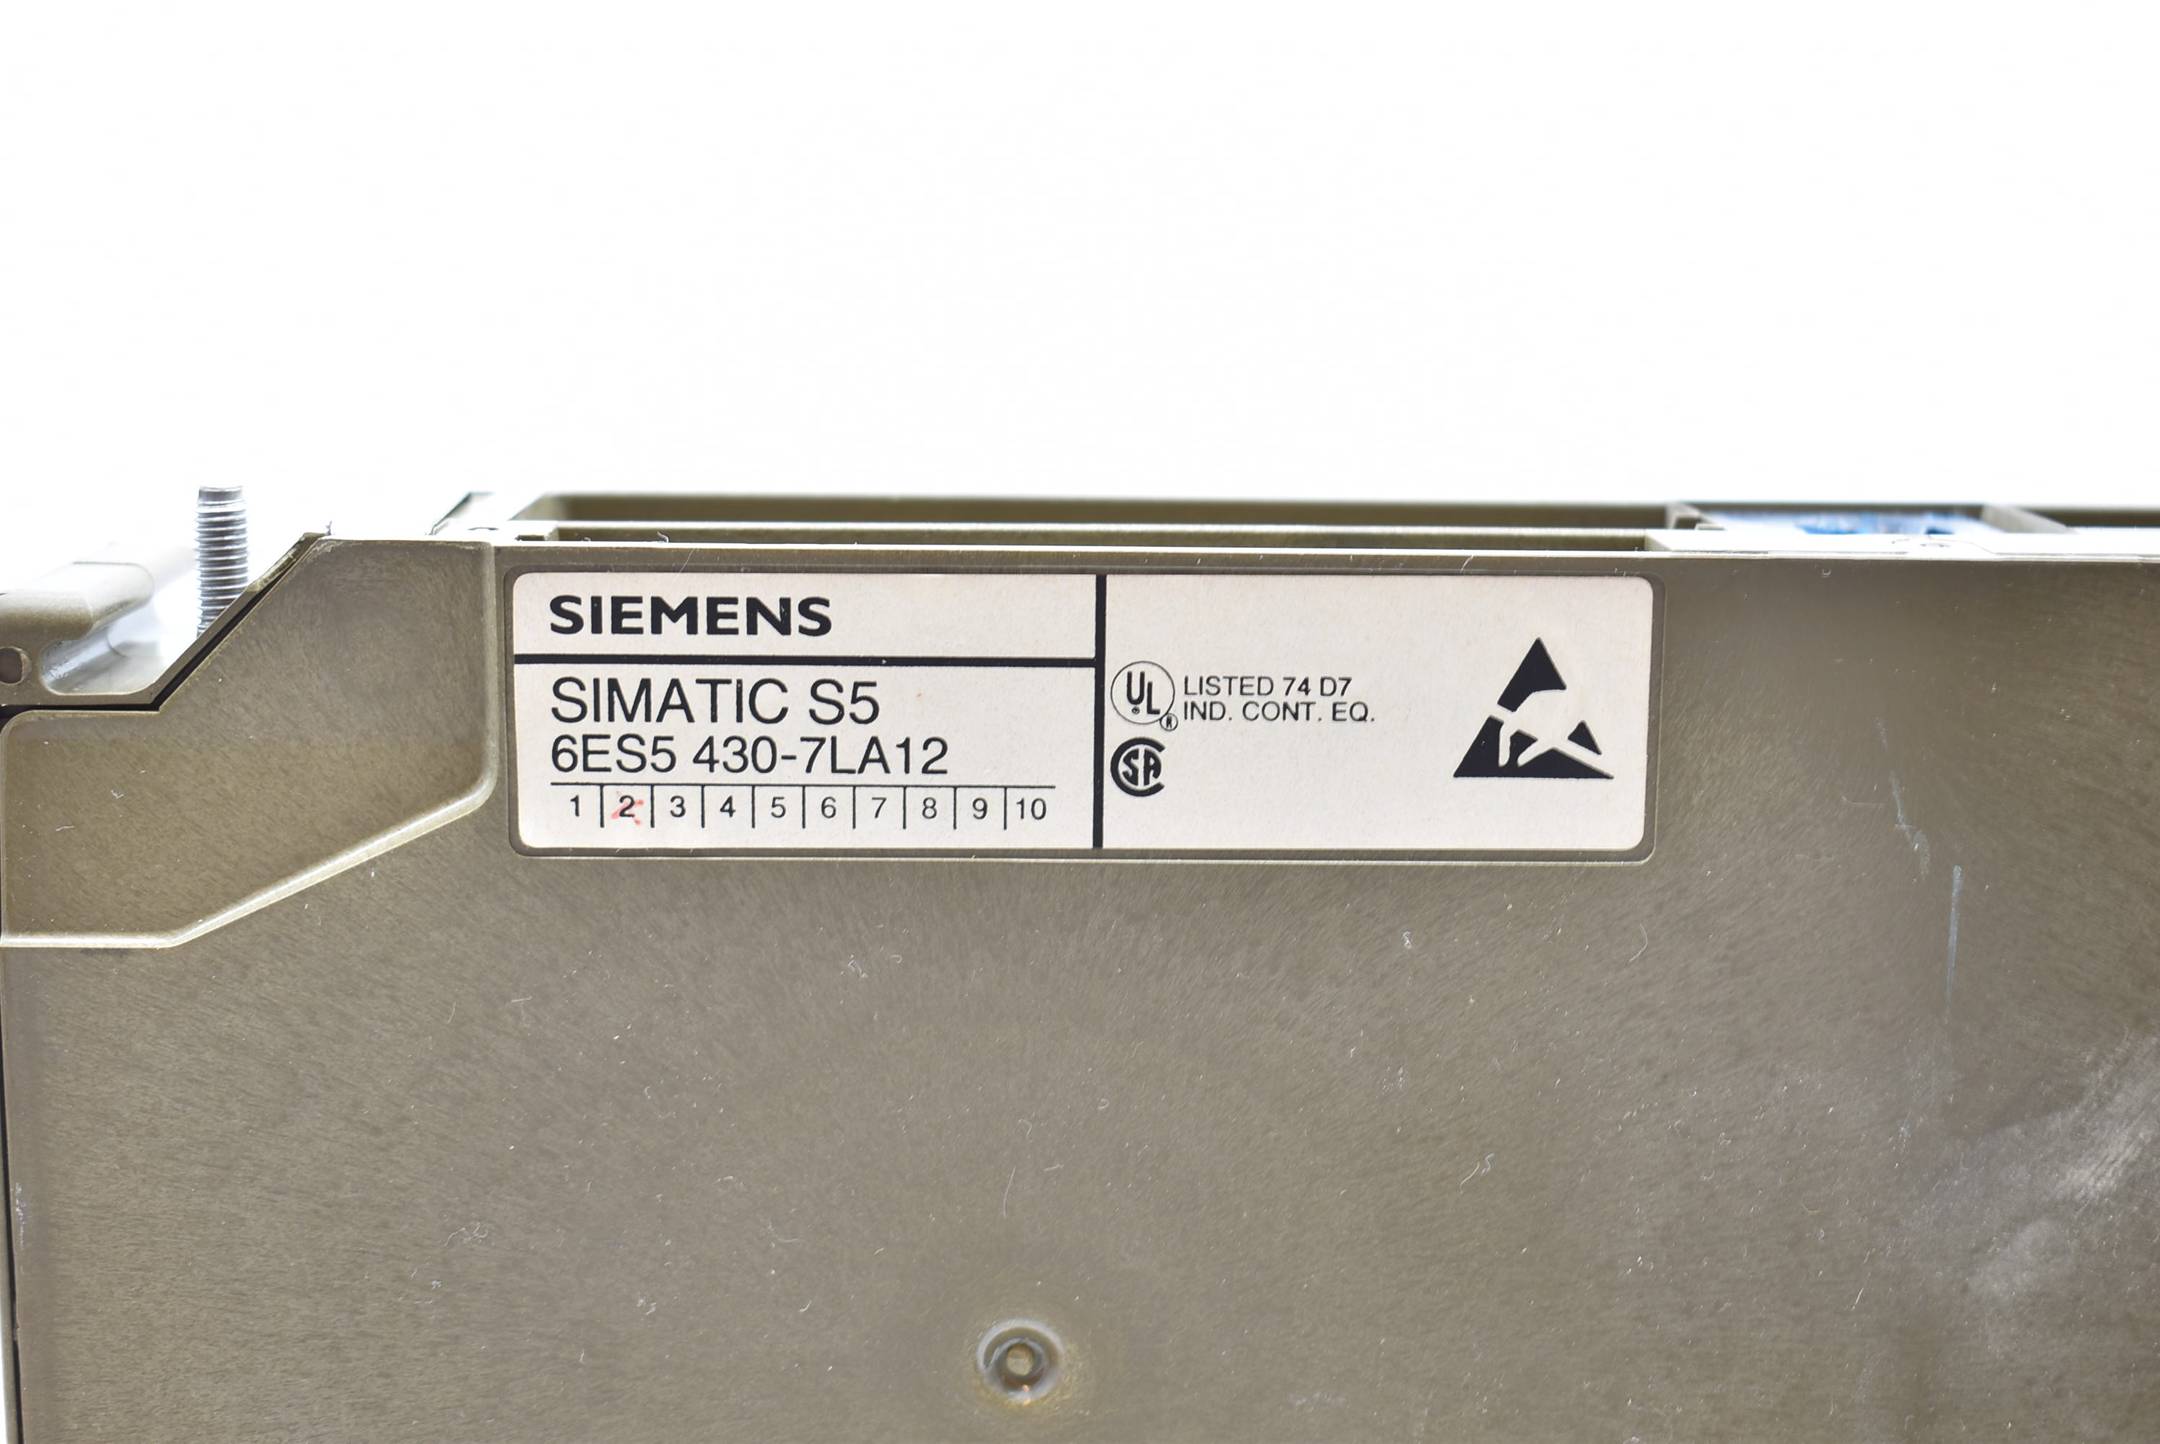 Siemens simatic S5 6ES5 430-7LA12 ( 6ES5430-7LA12 ) E.2